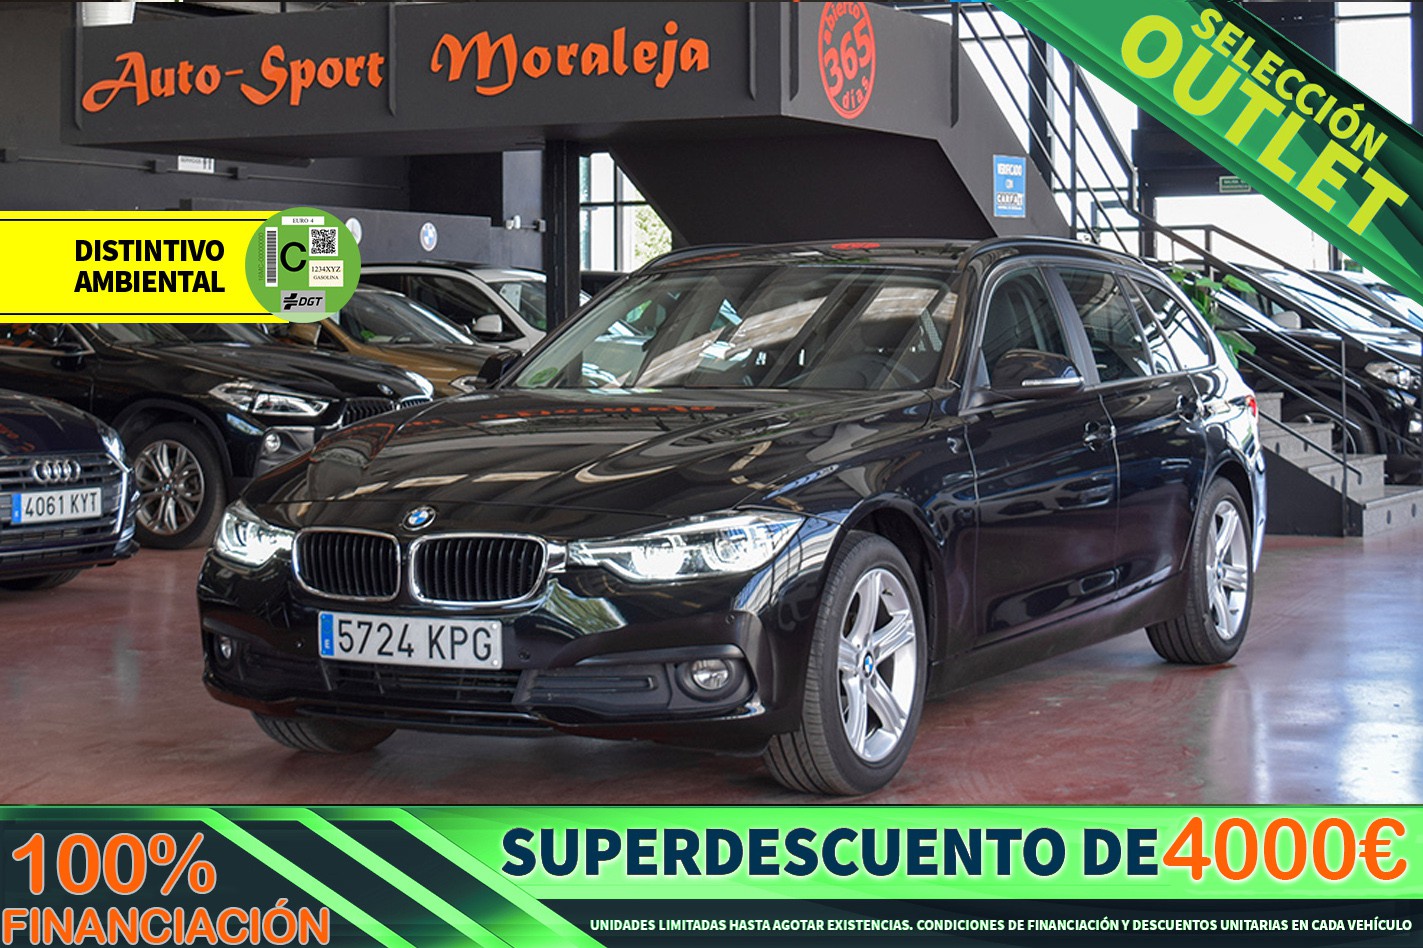 BMW Serie 3 Touring 150cv Saphirschwarz de segunda mano en Madrid desde 20.900 euros #3897